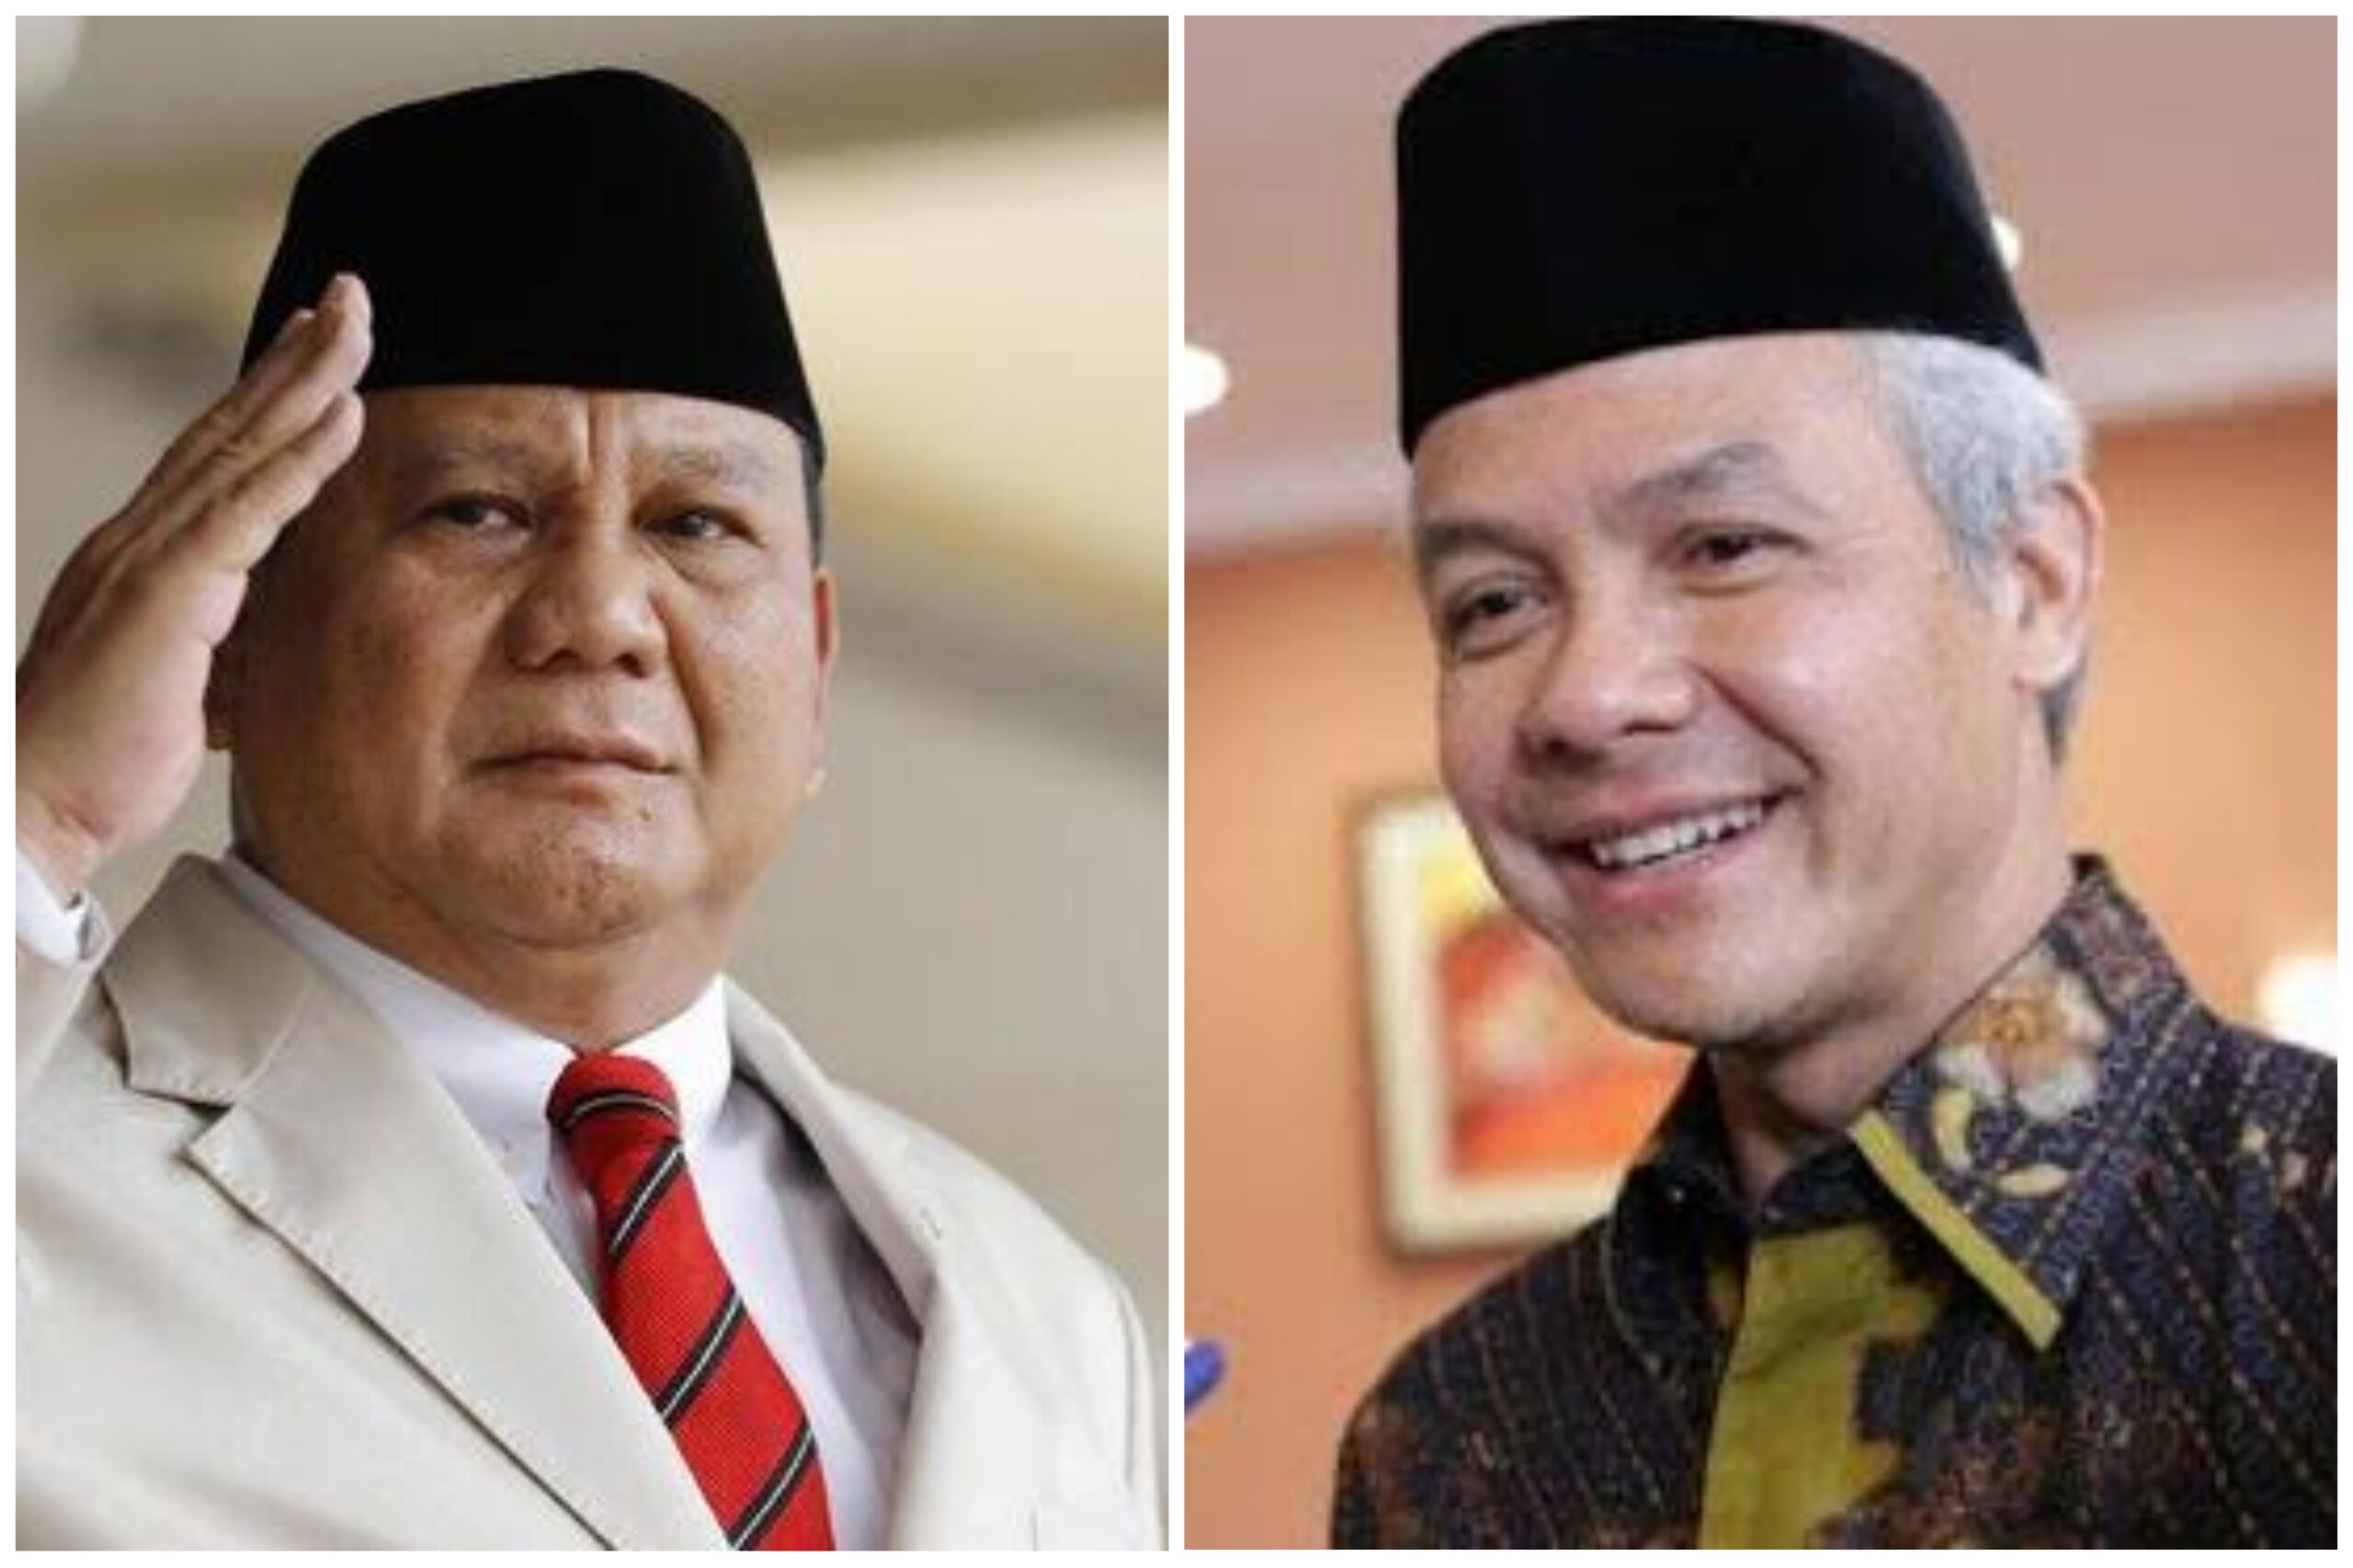 LSI Denny JA Ungkap Faktor Selisih 10,4% Elektabilitas Prabowo Vs Ganjar.(Foto:www.informasiterpercaya.com)